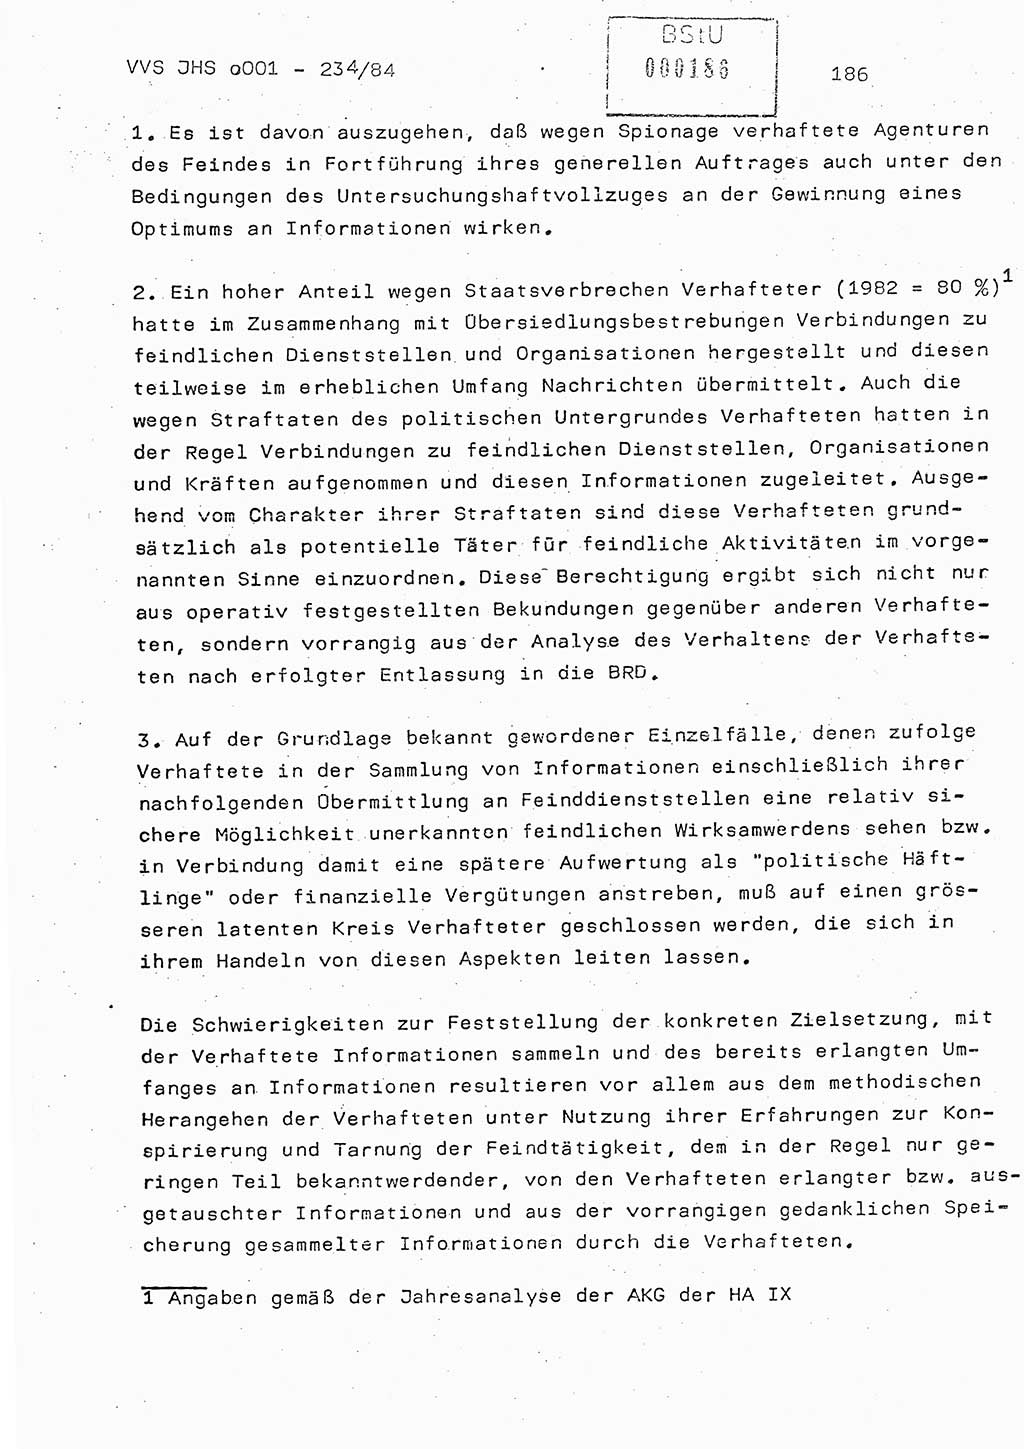 Dissertation Oberst Siegfried Rataizick (Abt. ⅩⅣ), Oberstleutnant Volkmar Heinz (Abt. ⅩⅣ), Oberstleutnant Werner Stein (HA Ⅸ), Hauptmann Heinz Conrad (JHS), Ministerium für Staatssicherheit (MfS) [Deutsche Demokratische Republik (DDR)], Juristische Hochschule (JHS), Vertrauliche Verschlußsache (VVS) o001-234/84, Potsdam 1984, Seite 186 (Diss. MfS DDR JHS VVS o001-234/84 1984, S. 186)